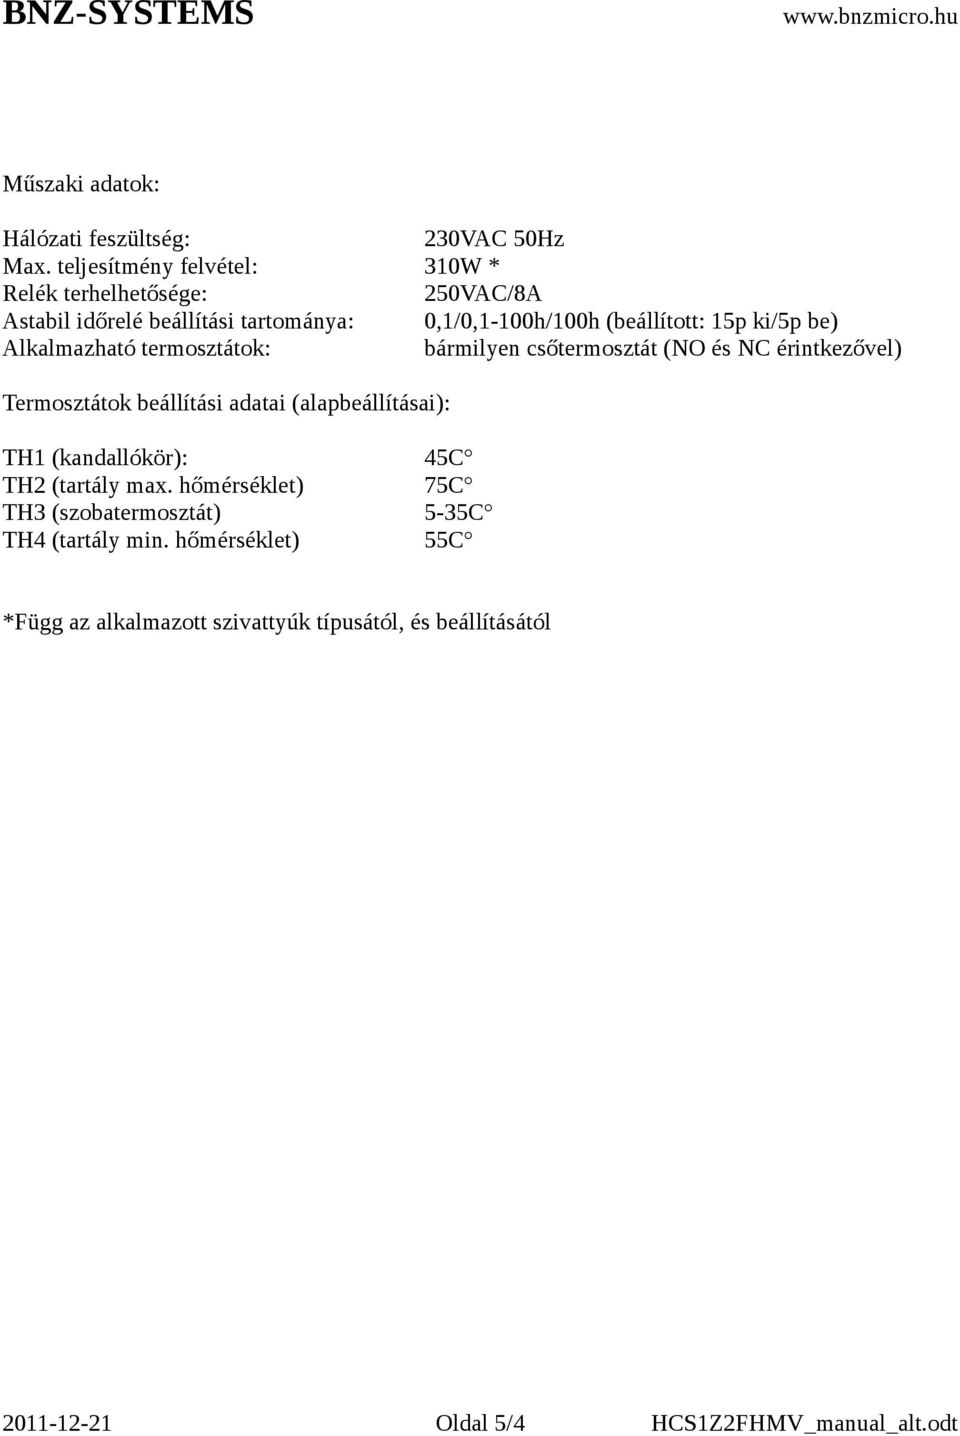 ki/5p be) Alkalmazható termosztátok: bármilyen csőtermosztát (NO és NC érintkezővel) Termosztátok beállítási adatai (alapbeállításai):